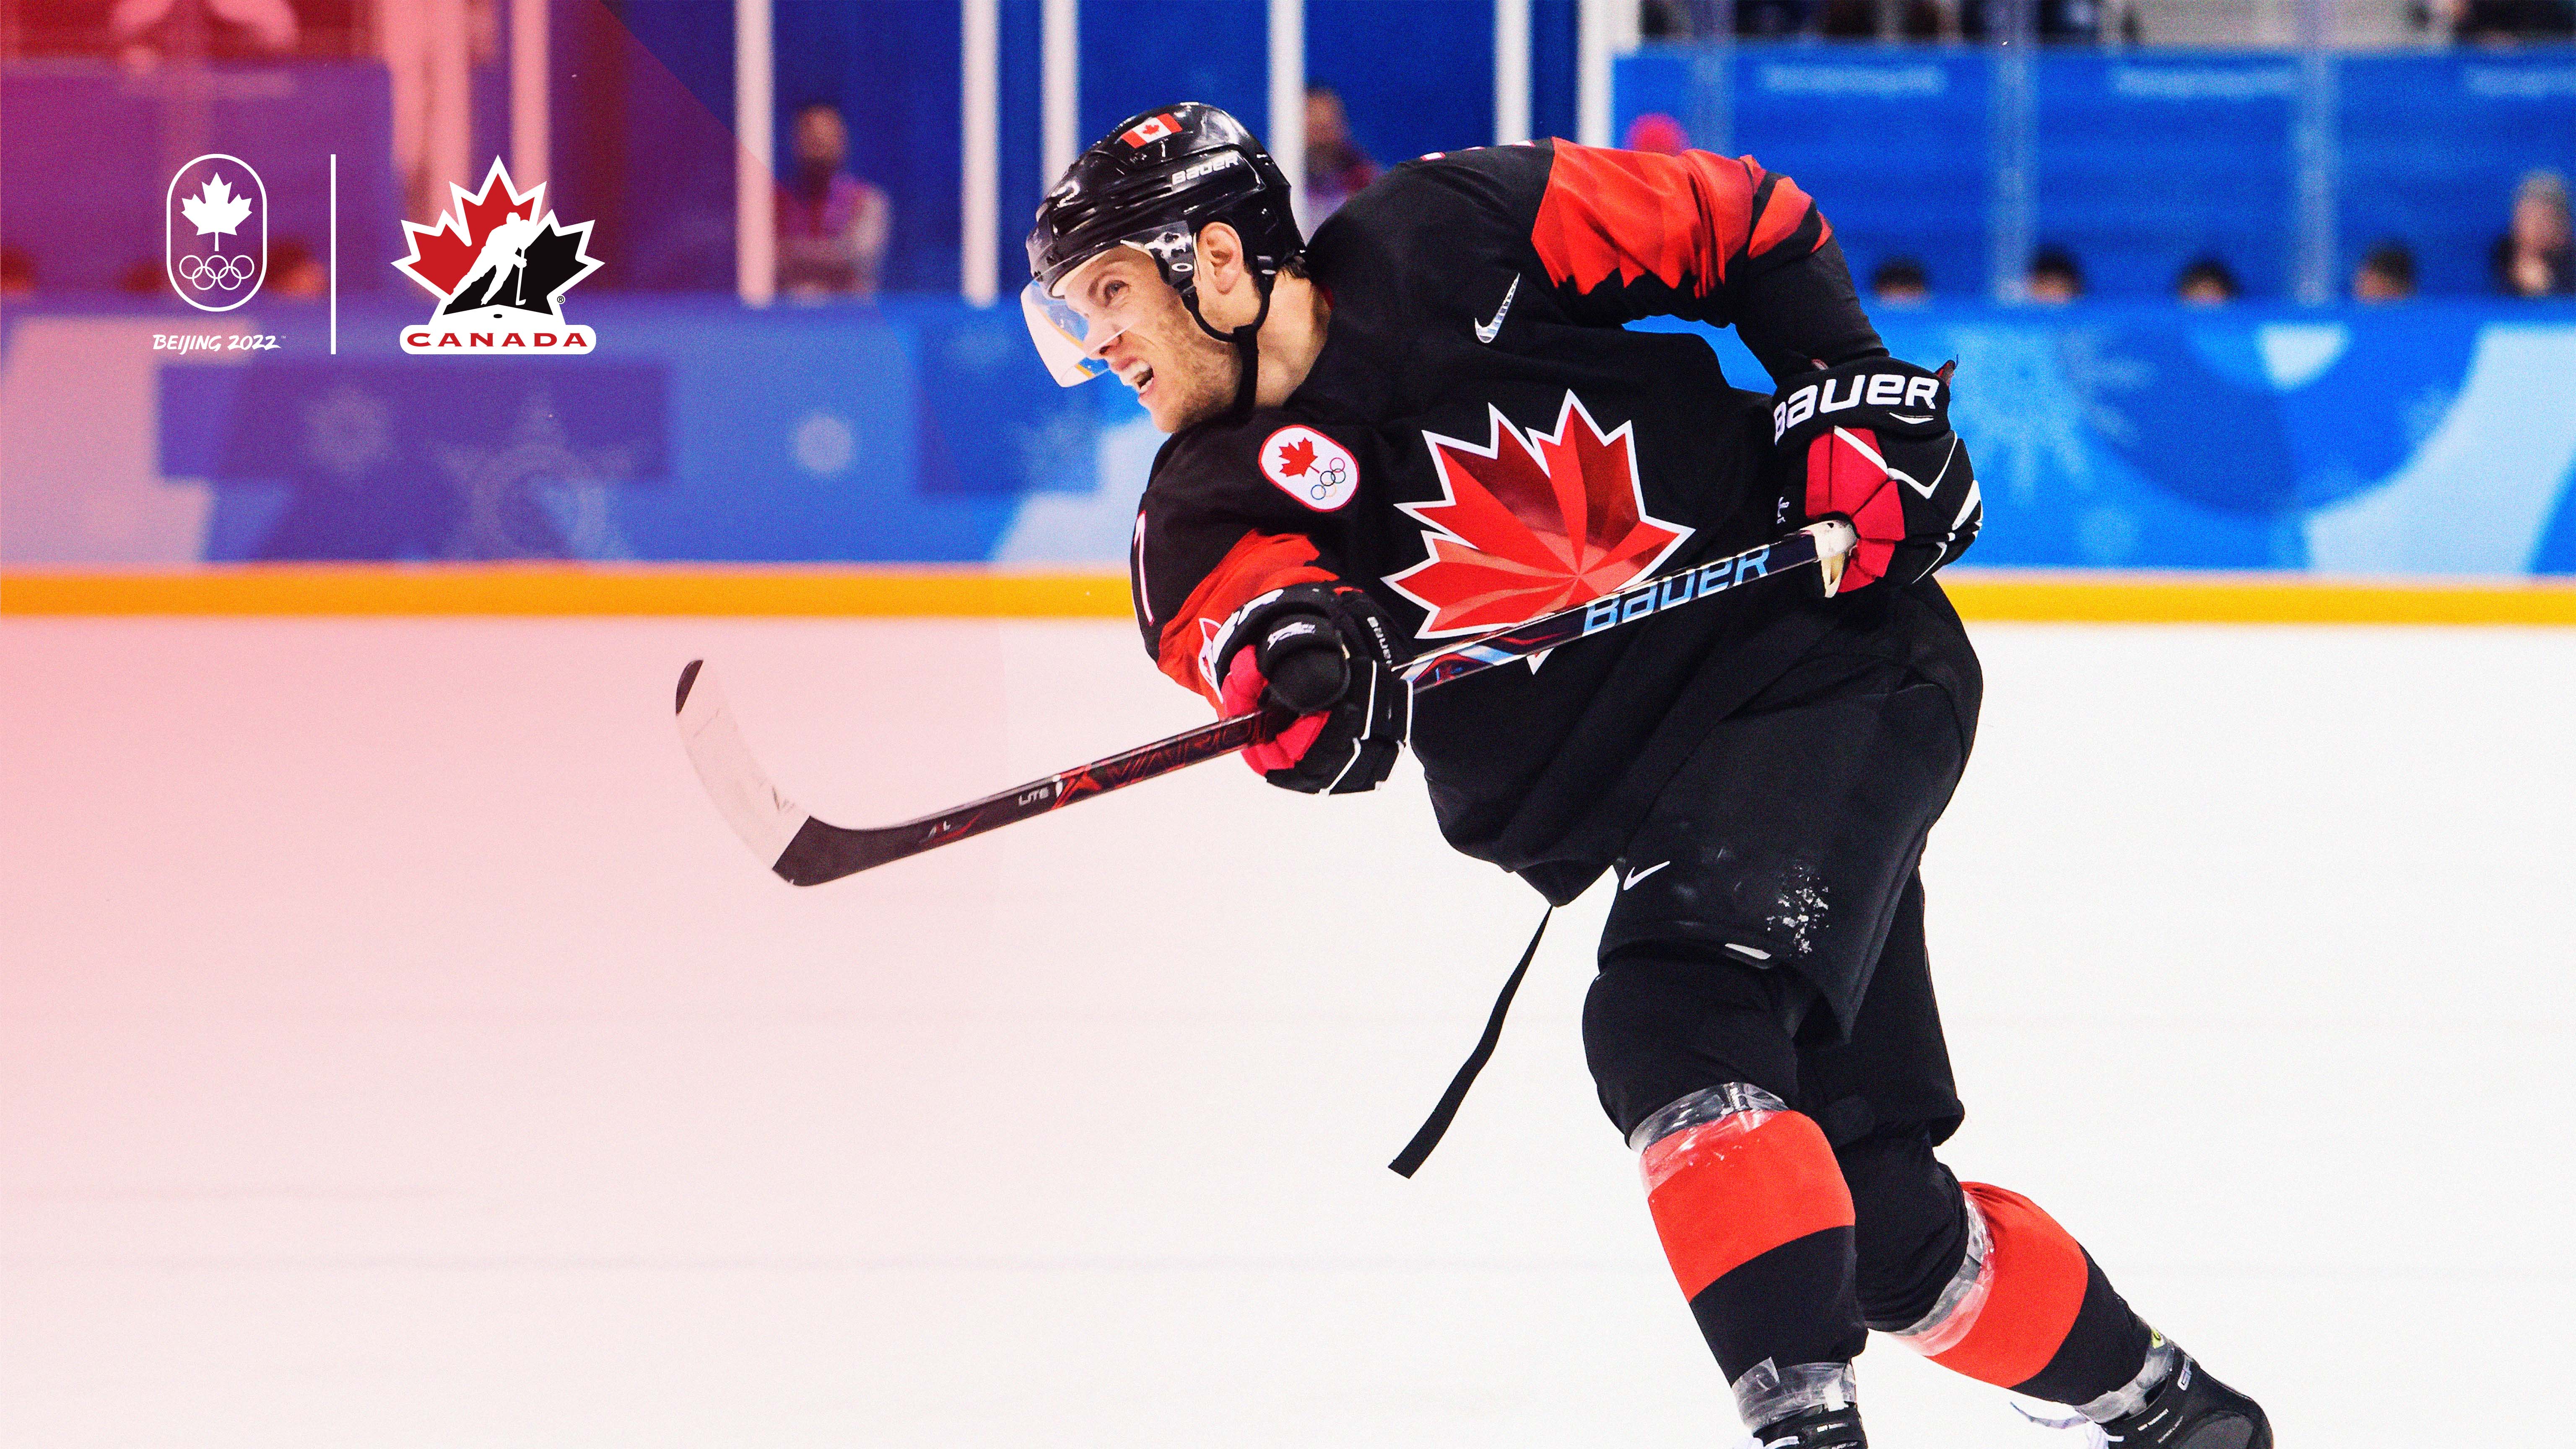 2022 Winter Olympics men's ice hockey rosters: Canada, USA